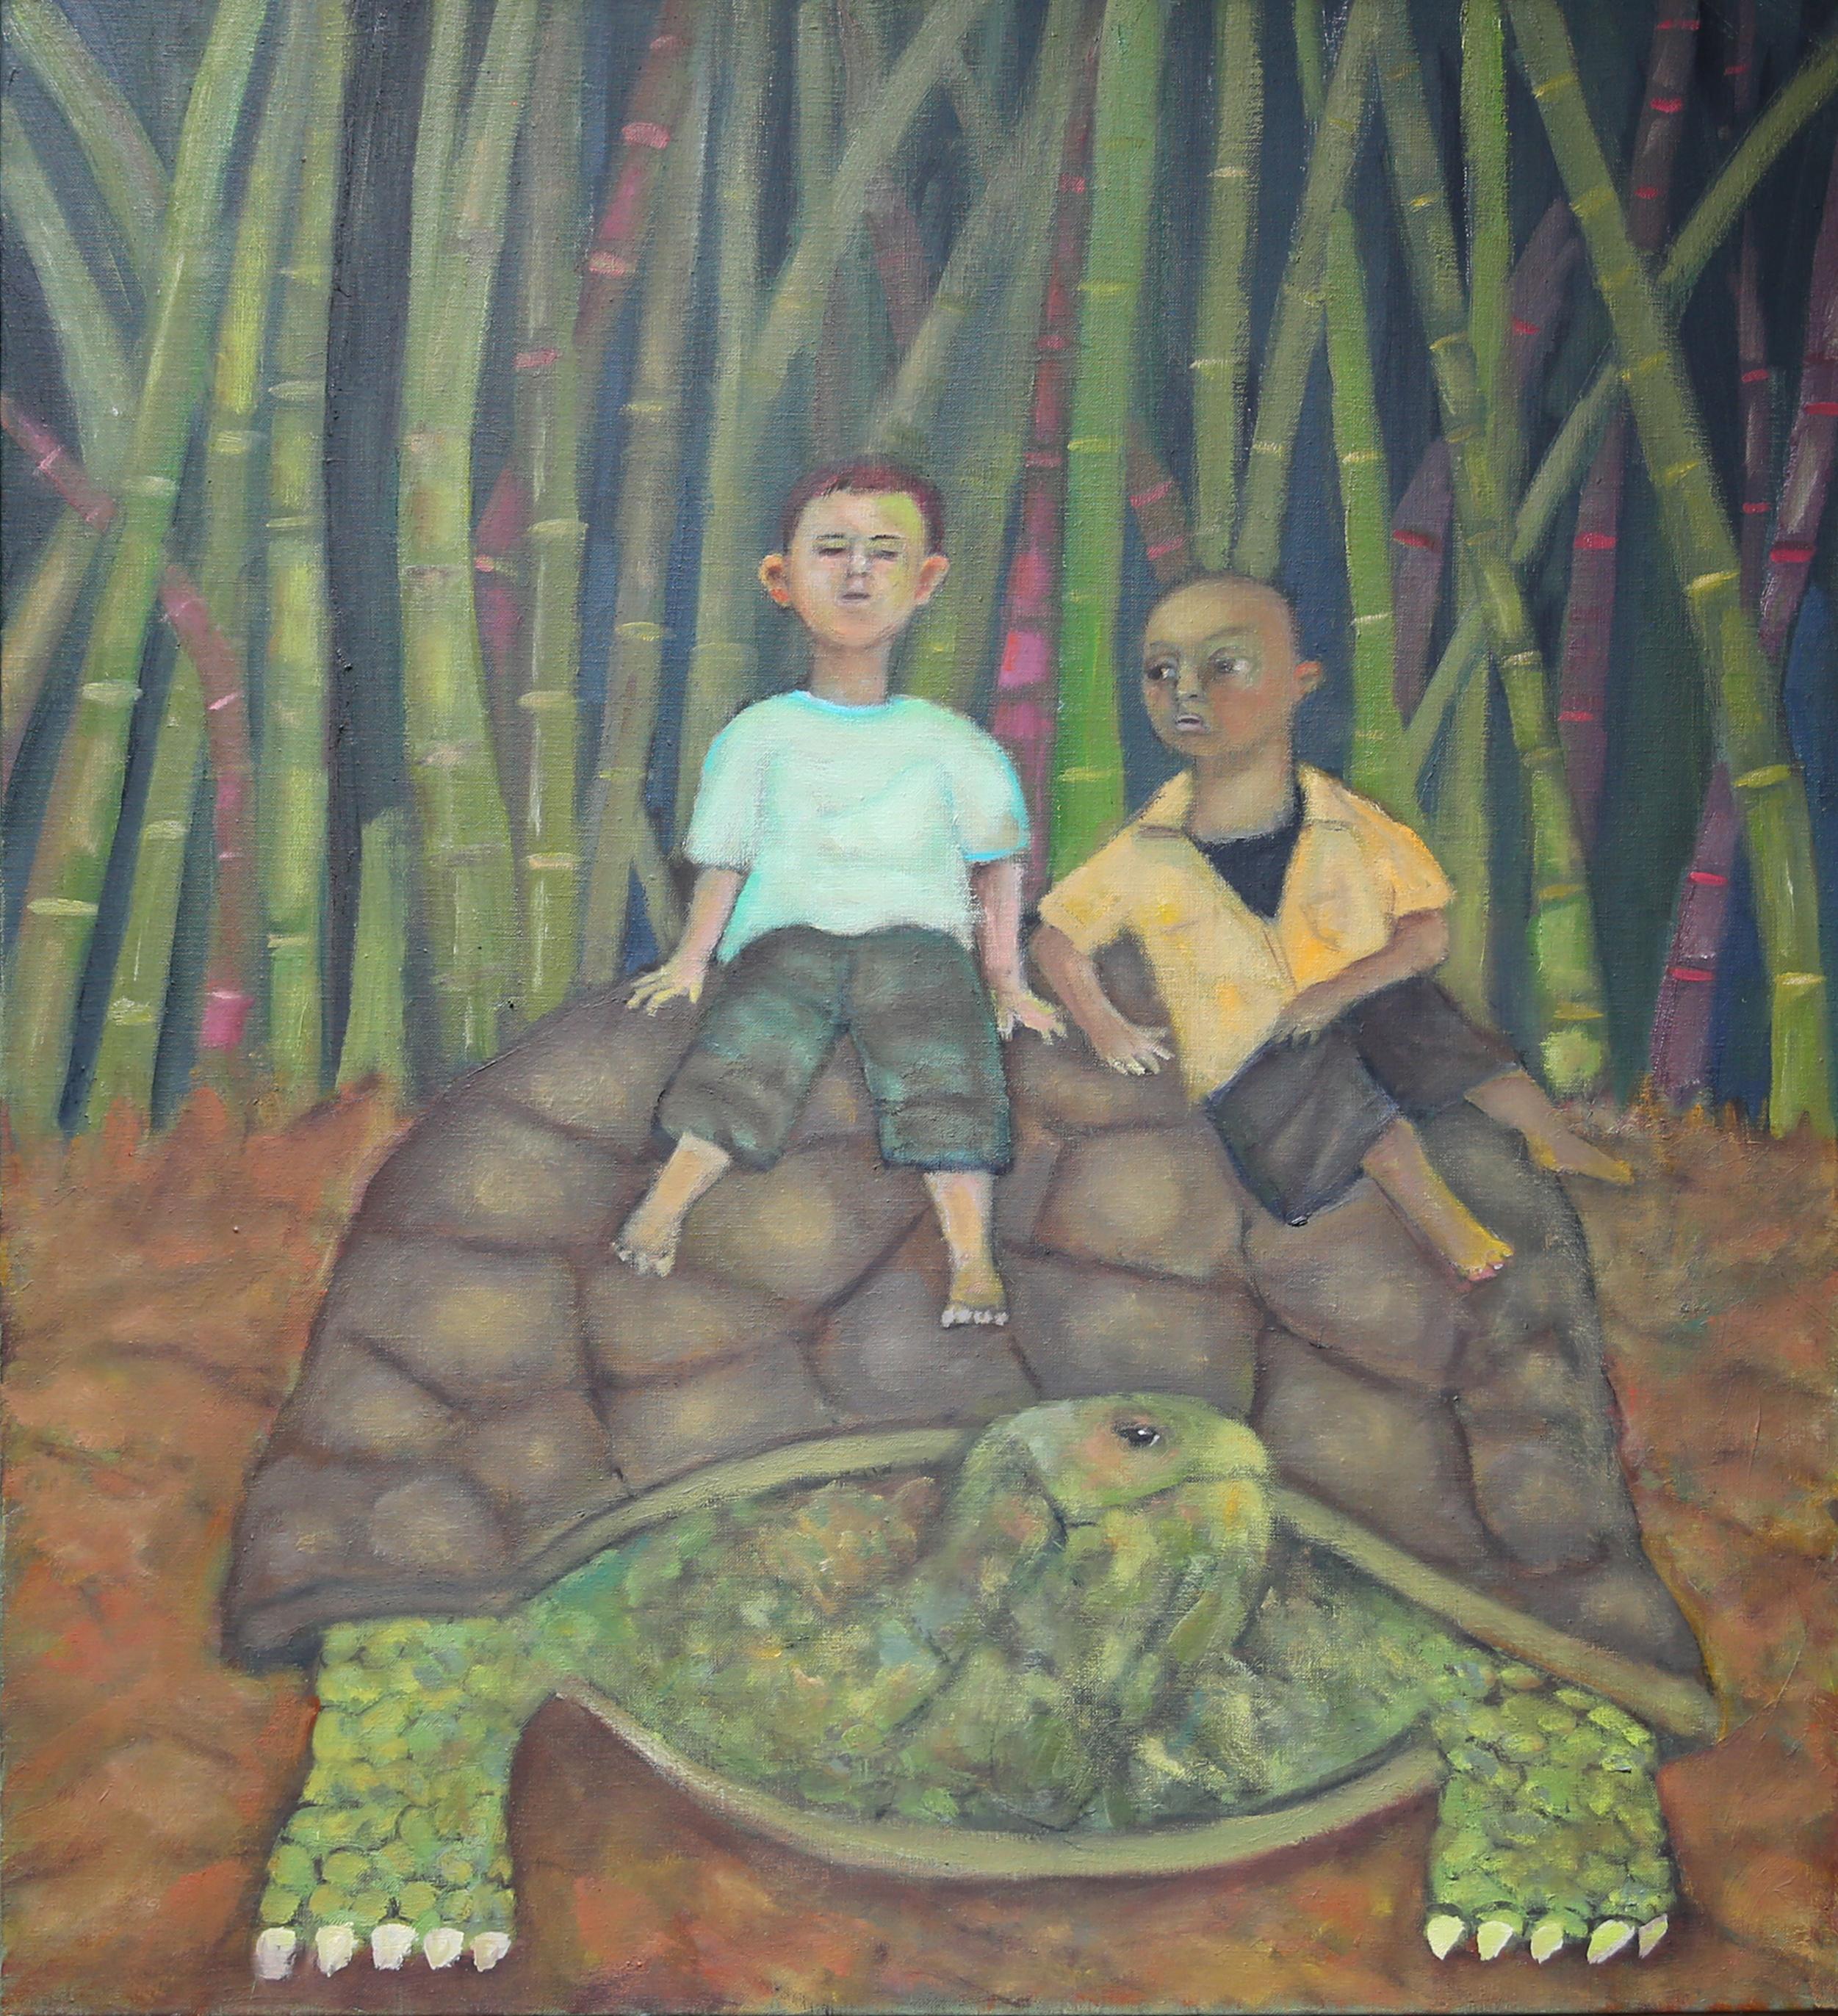 Stephen Basso Animal Painting – Hitchhikers, Schildkröten- und Jungen-Kinder in weichen, verträumten grünen Farben